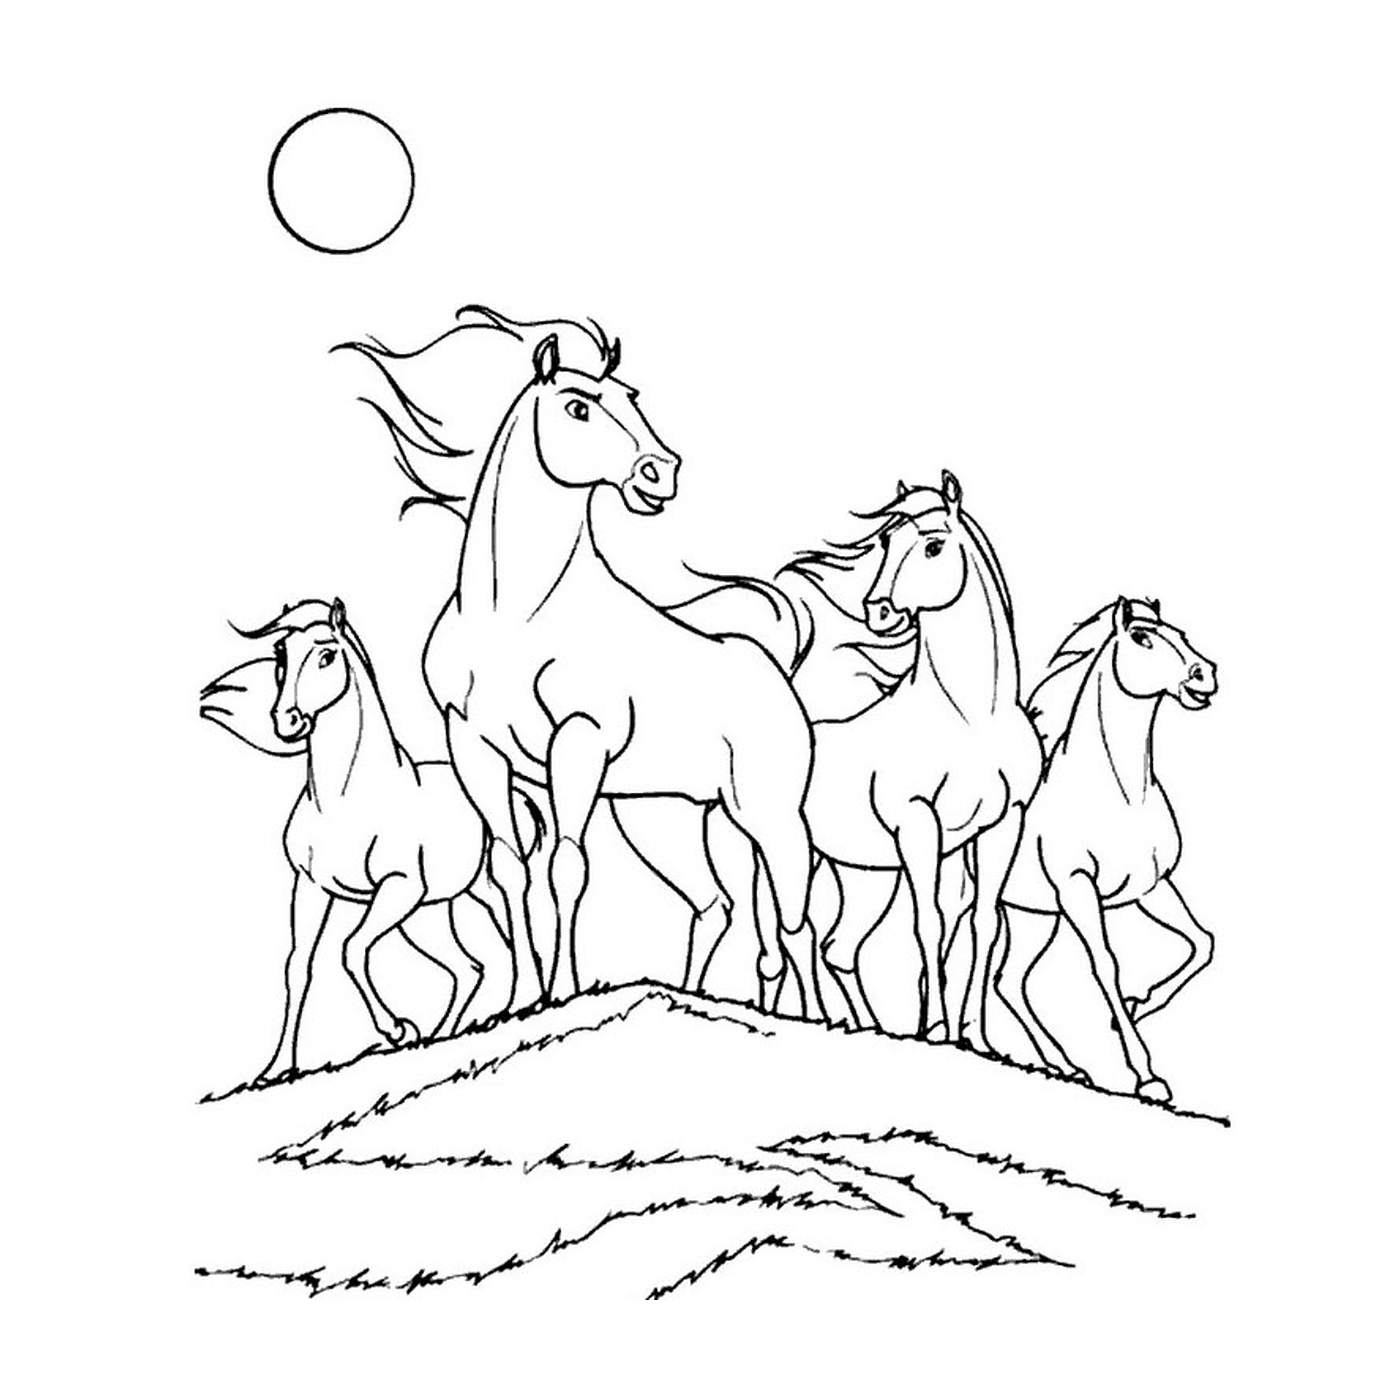  Grupo de caballos de pie en una colina herbosa 